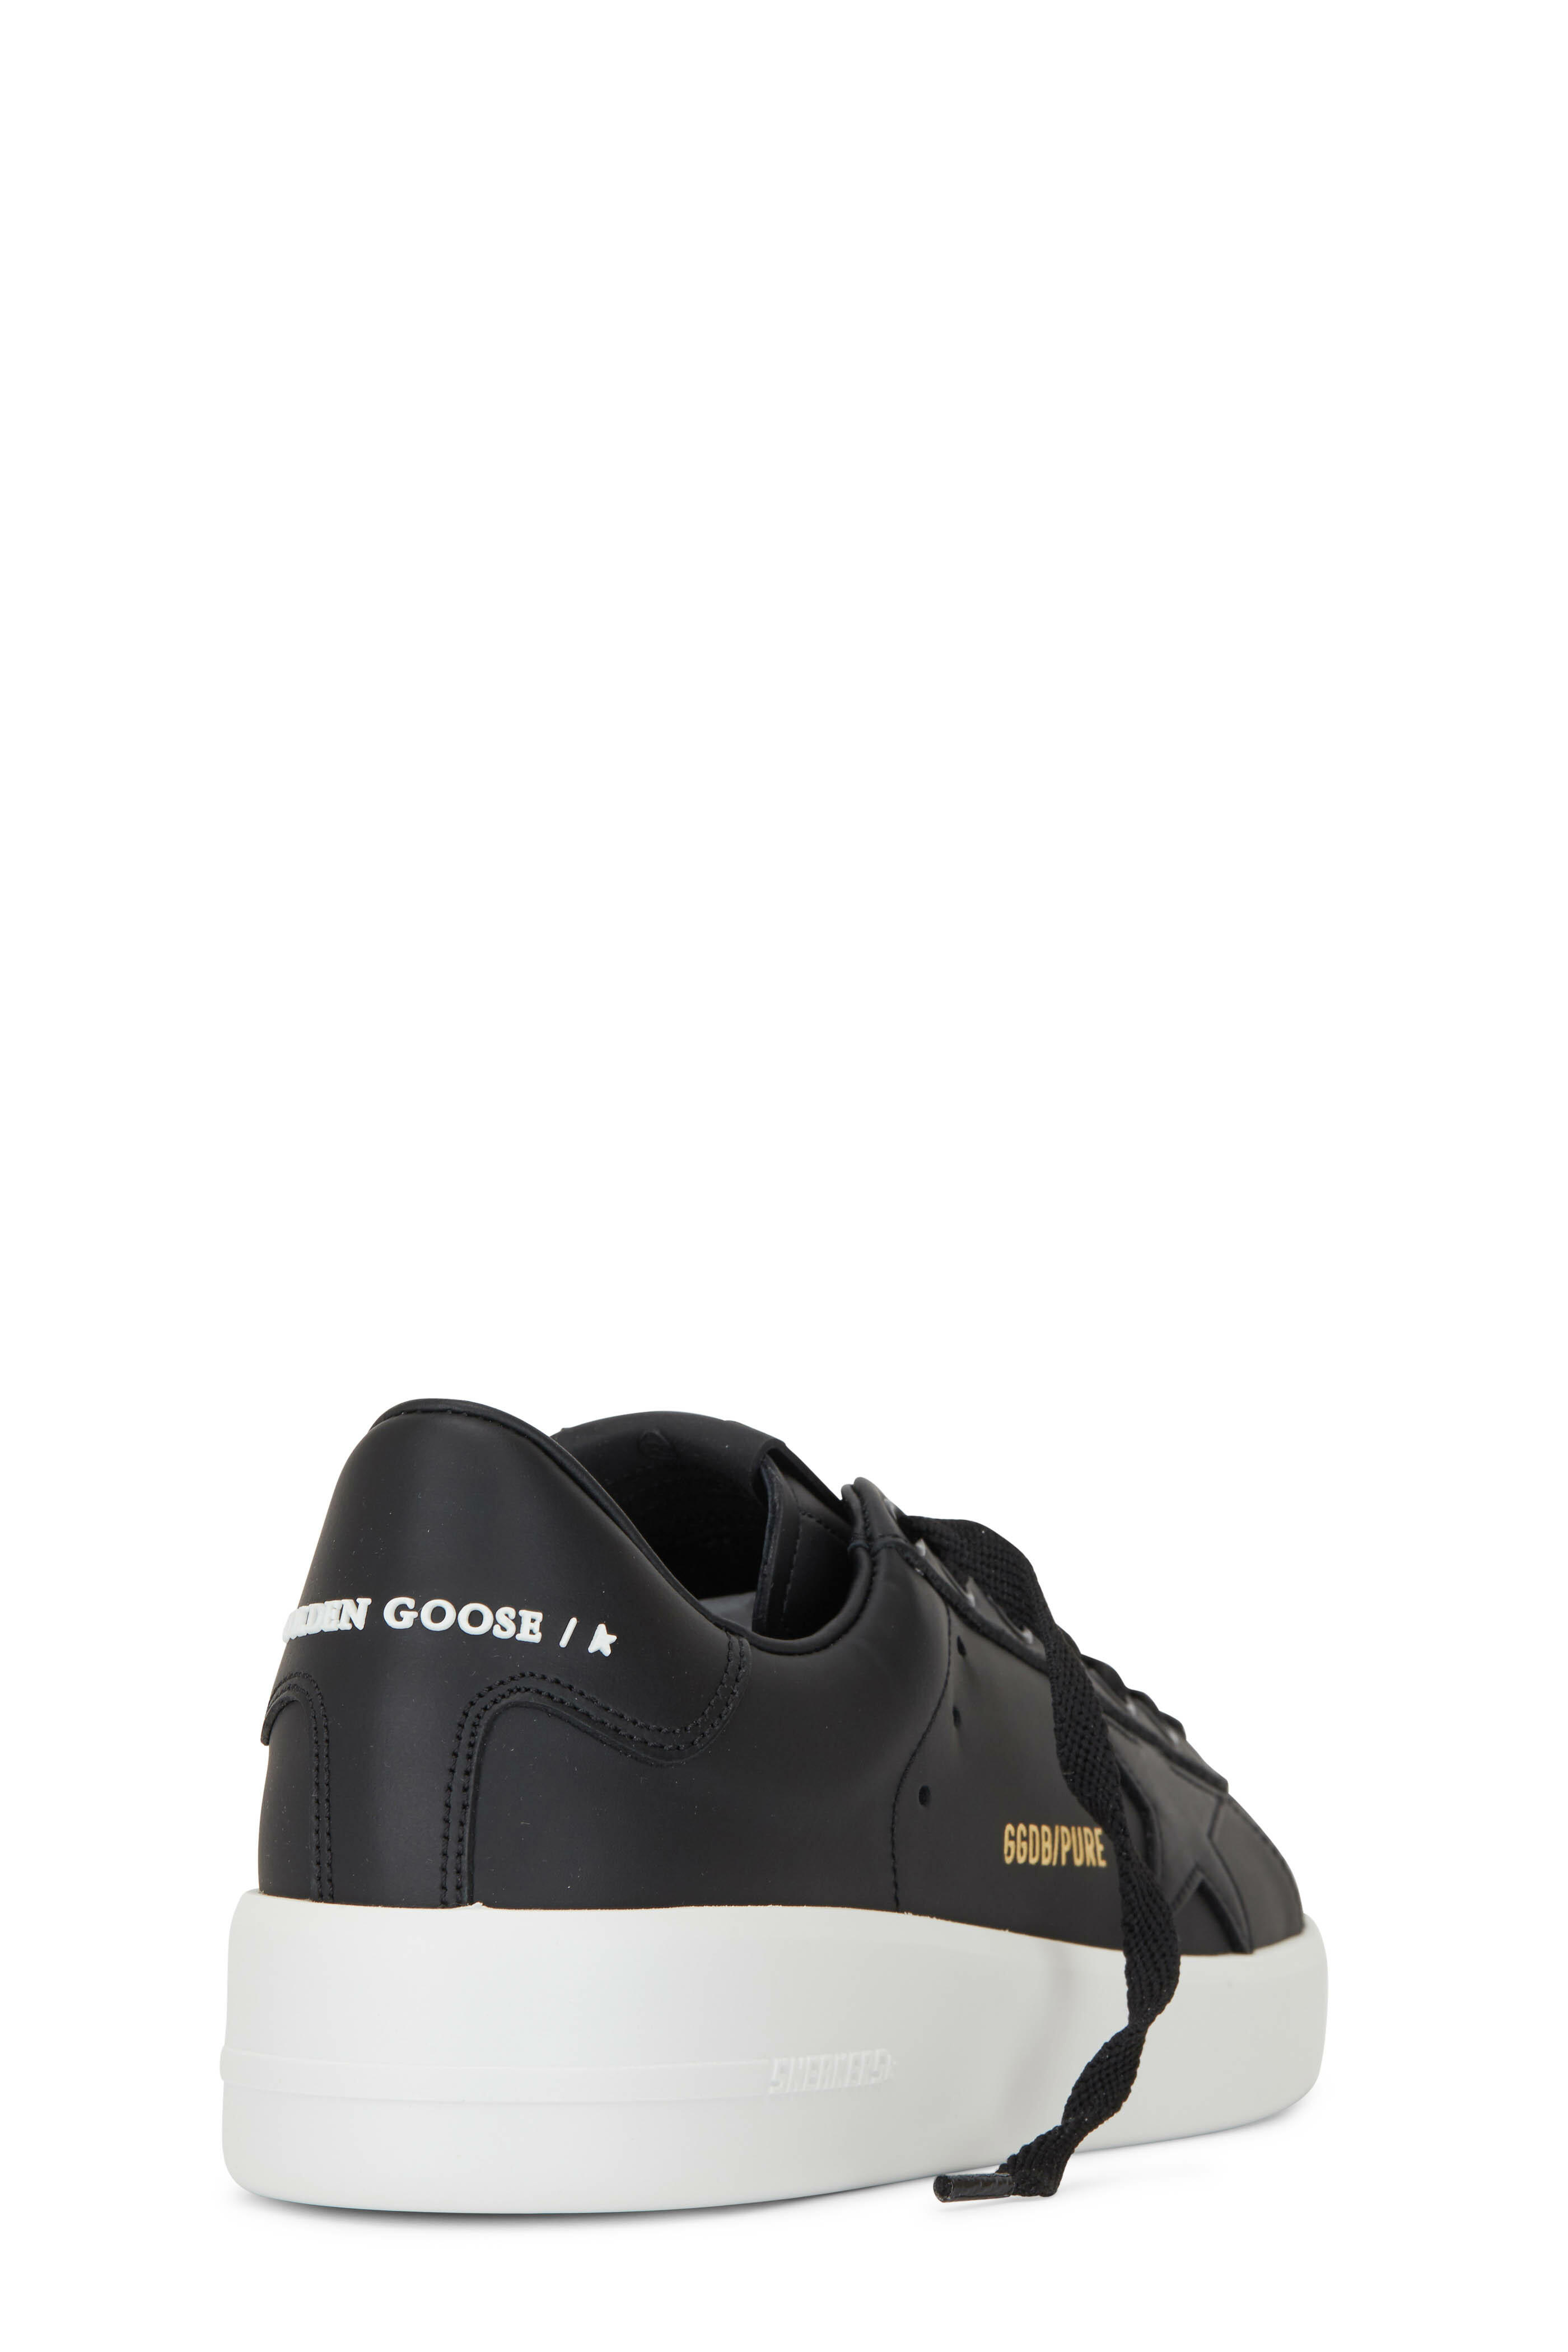 raken Maan Assimilatie Golden Goose - Pure Star Black Leather Sneaker | Mitchell Stores